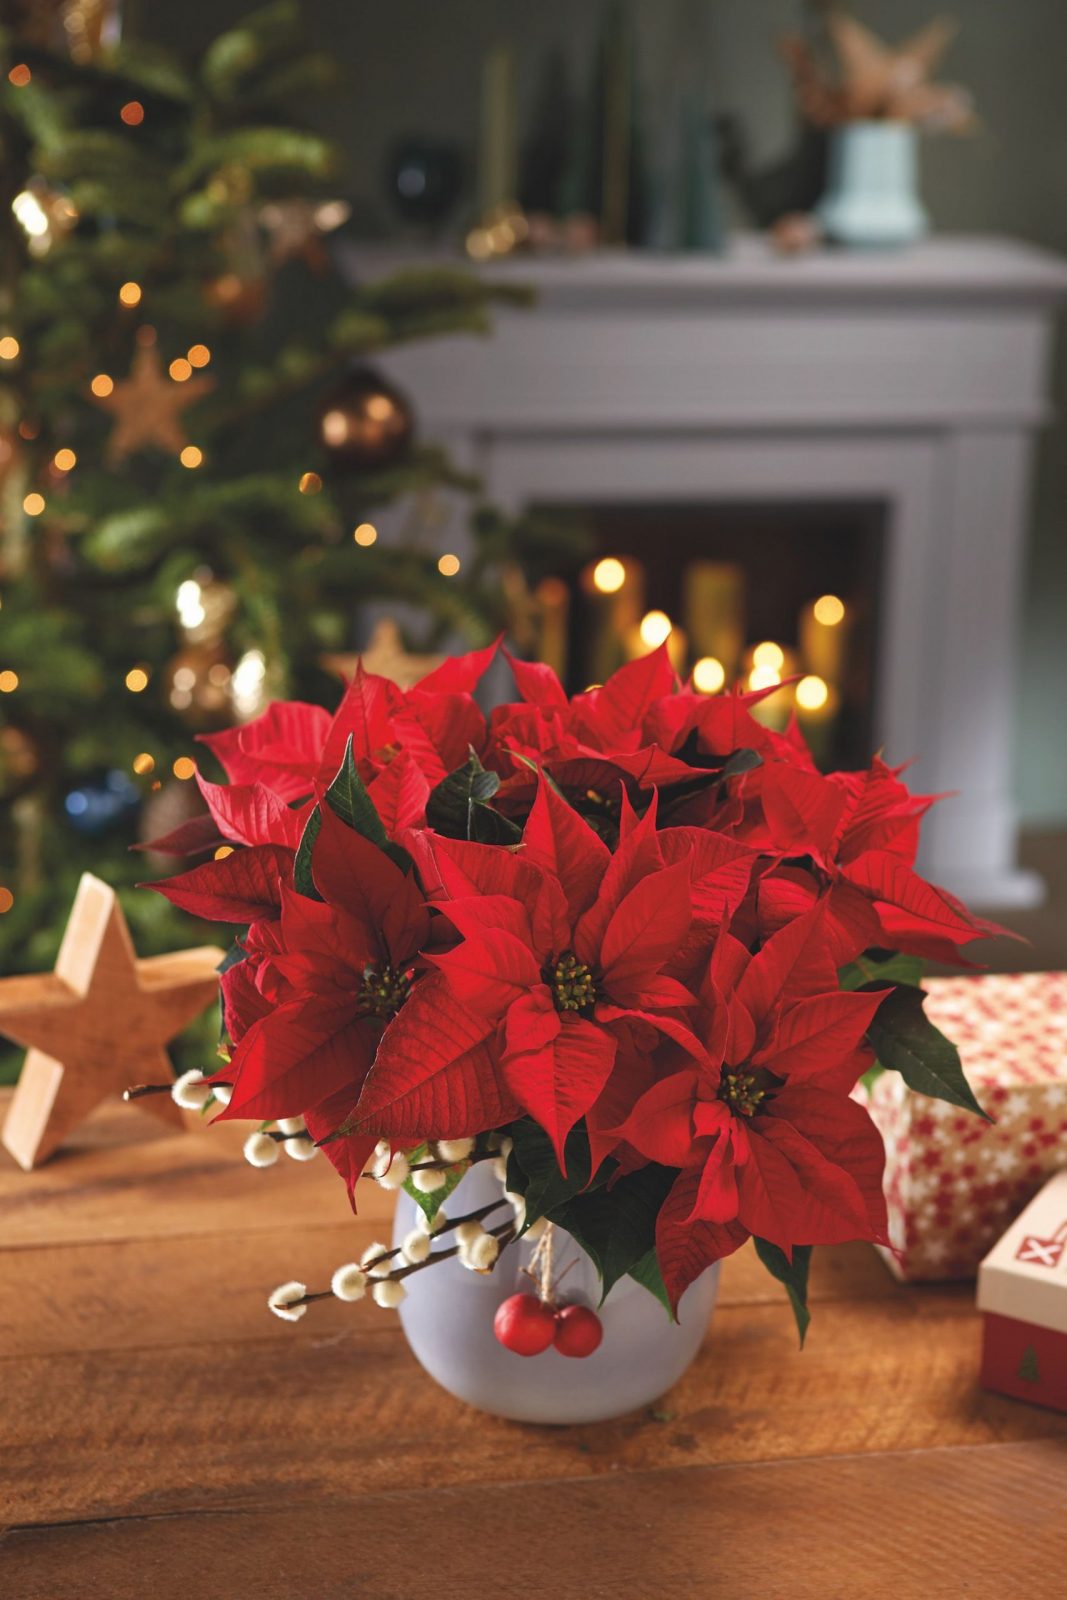 Різдвяні декорації: як гармонійно прикрасити будинок до свят і не перетворити на хаос із дощику 7 2